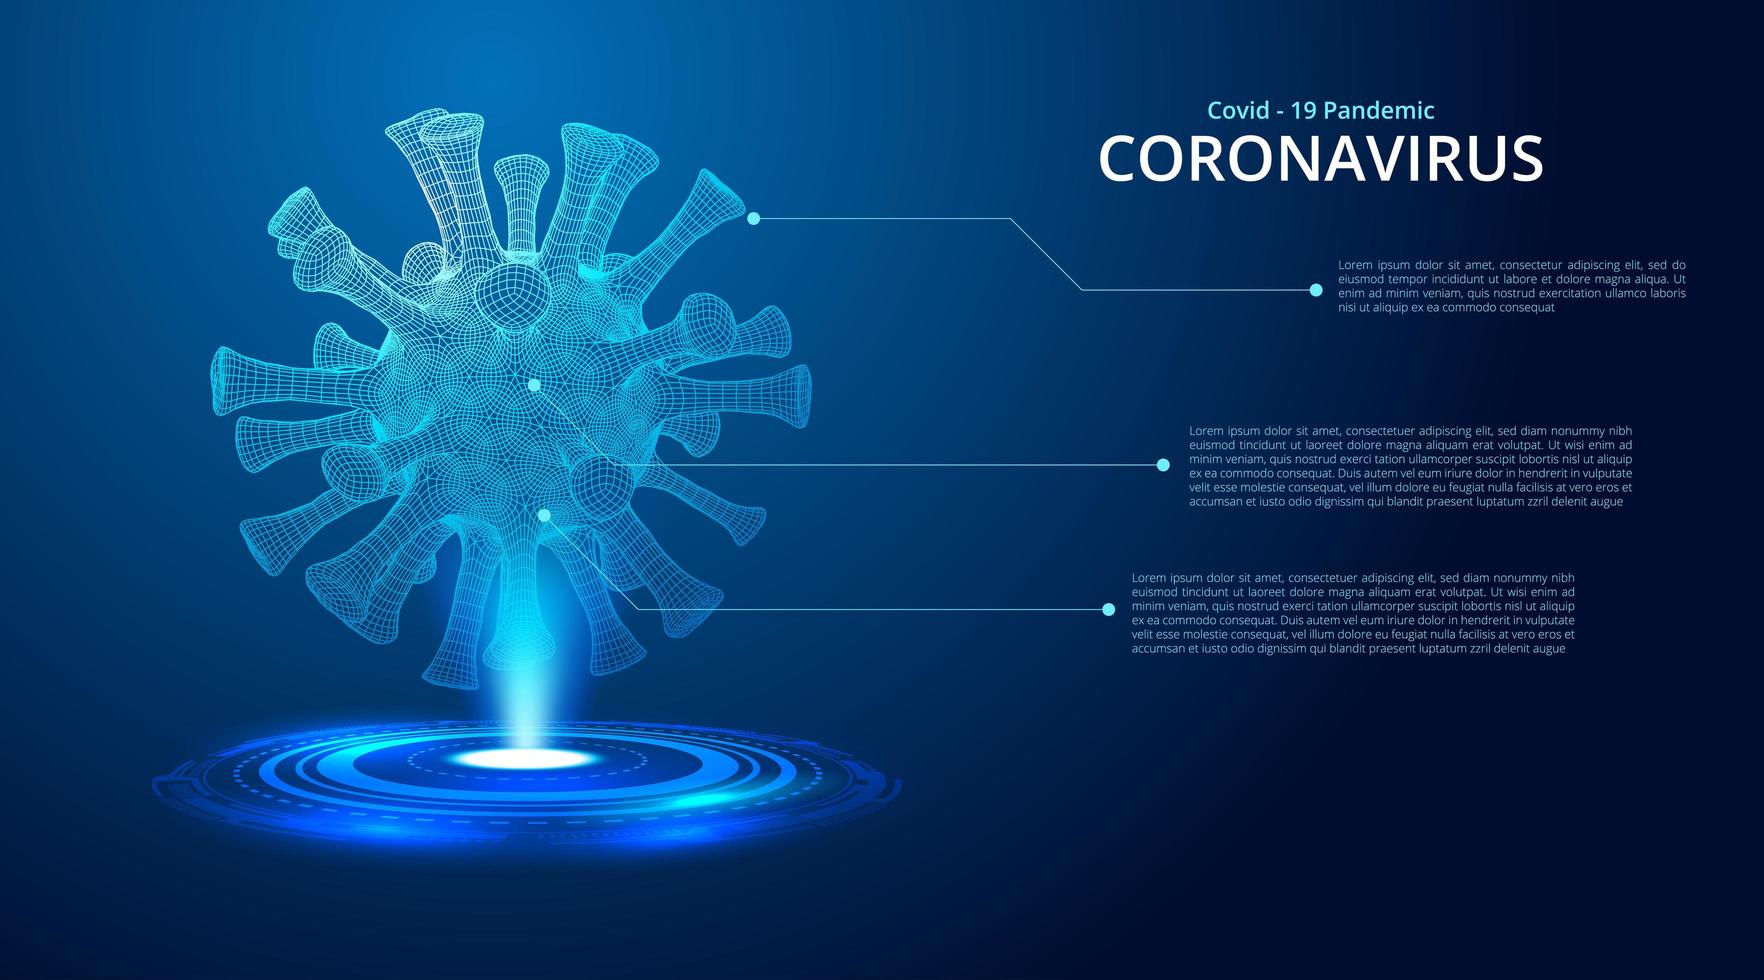 bleu foncé brillant 2019-ncov coronavirus low poly vecteur